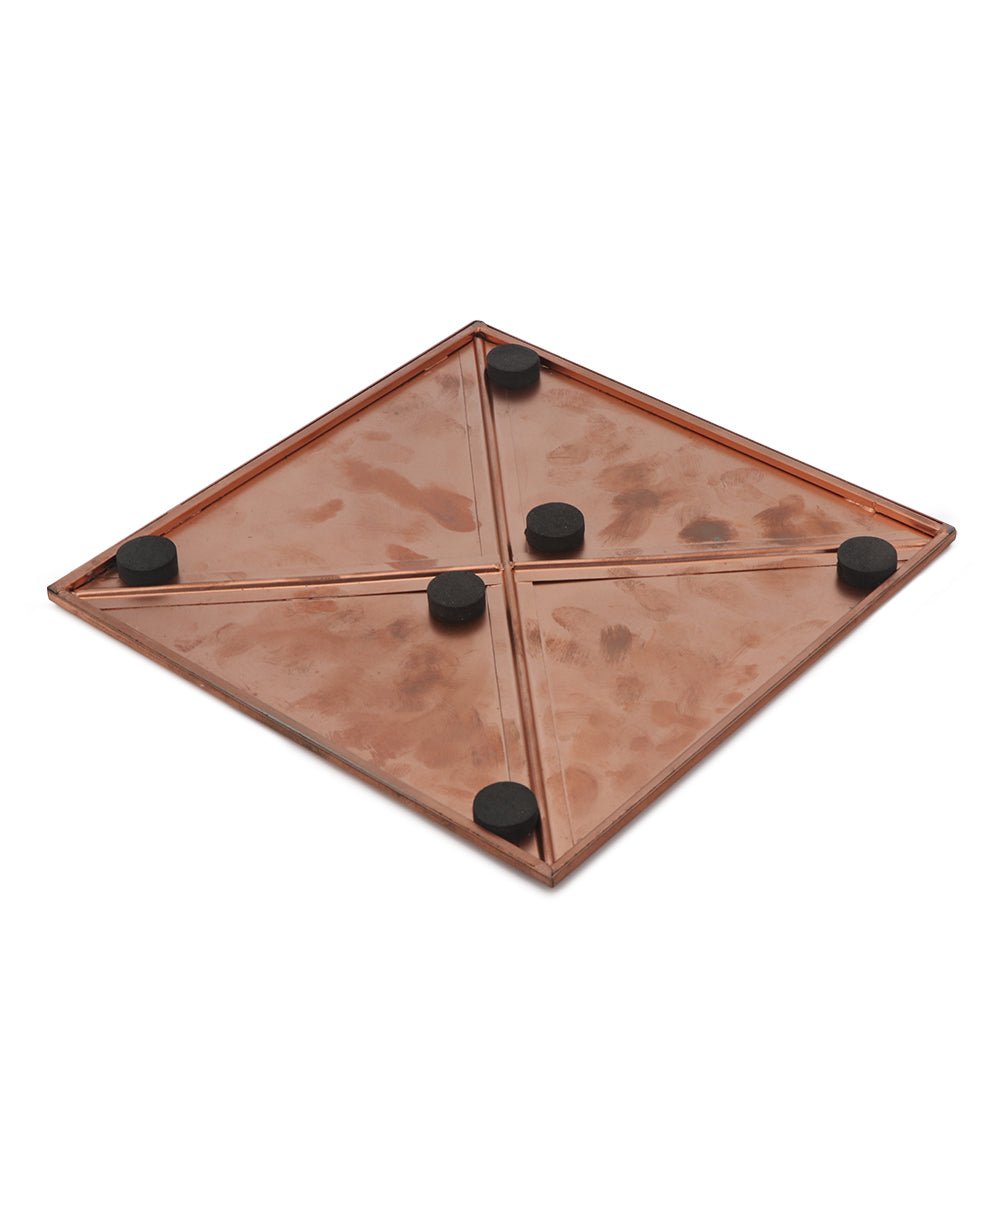 Sri Yantra Copper Charging Plate/Plaque - Decorative Plates